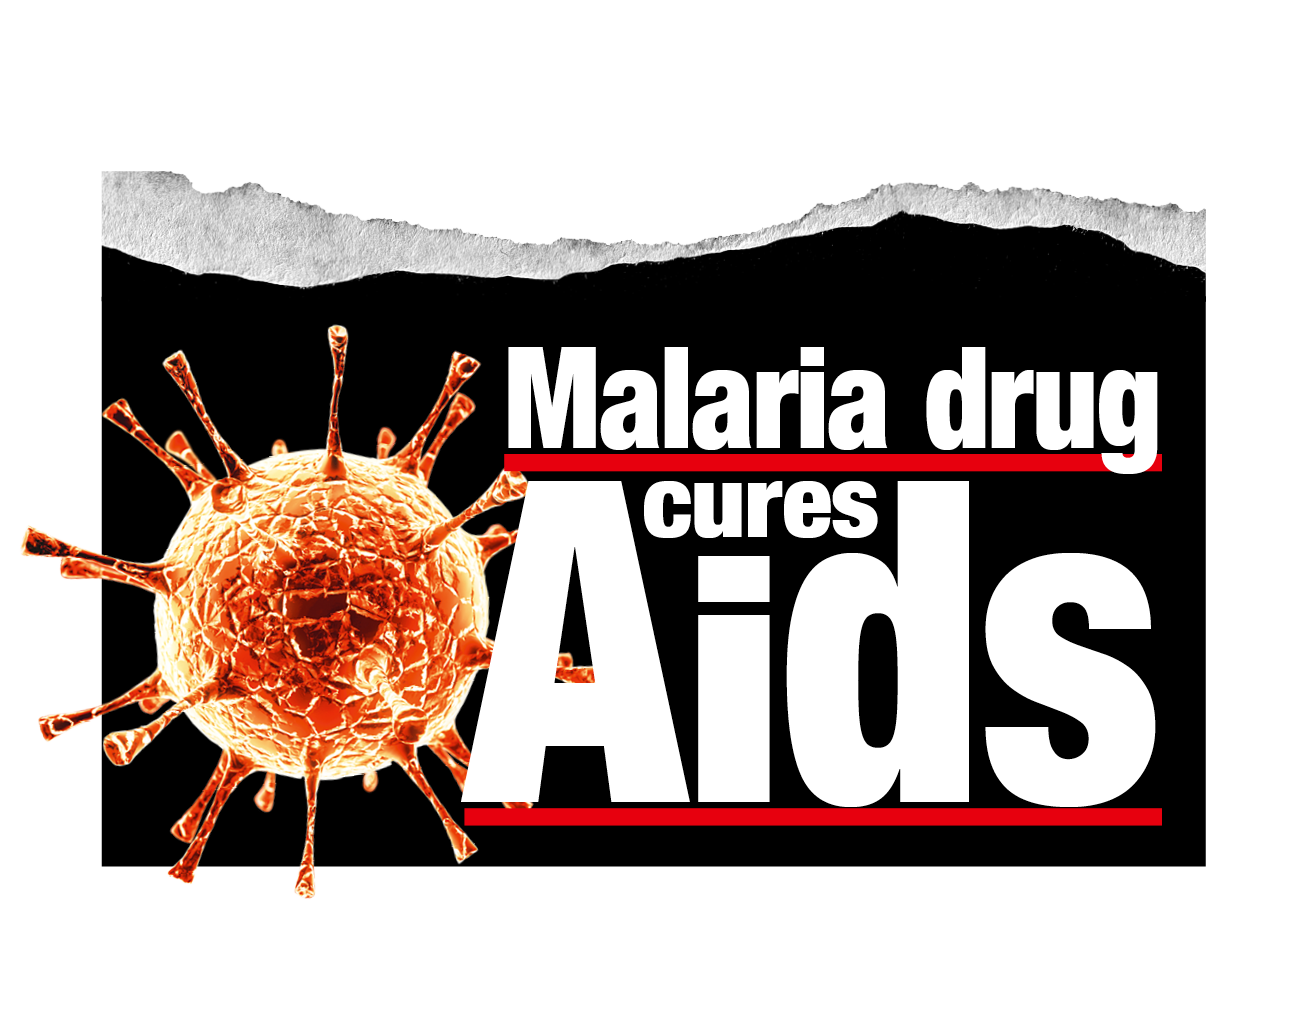 Malaria drug cures Aids